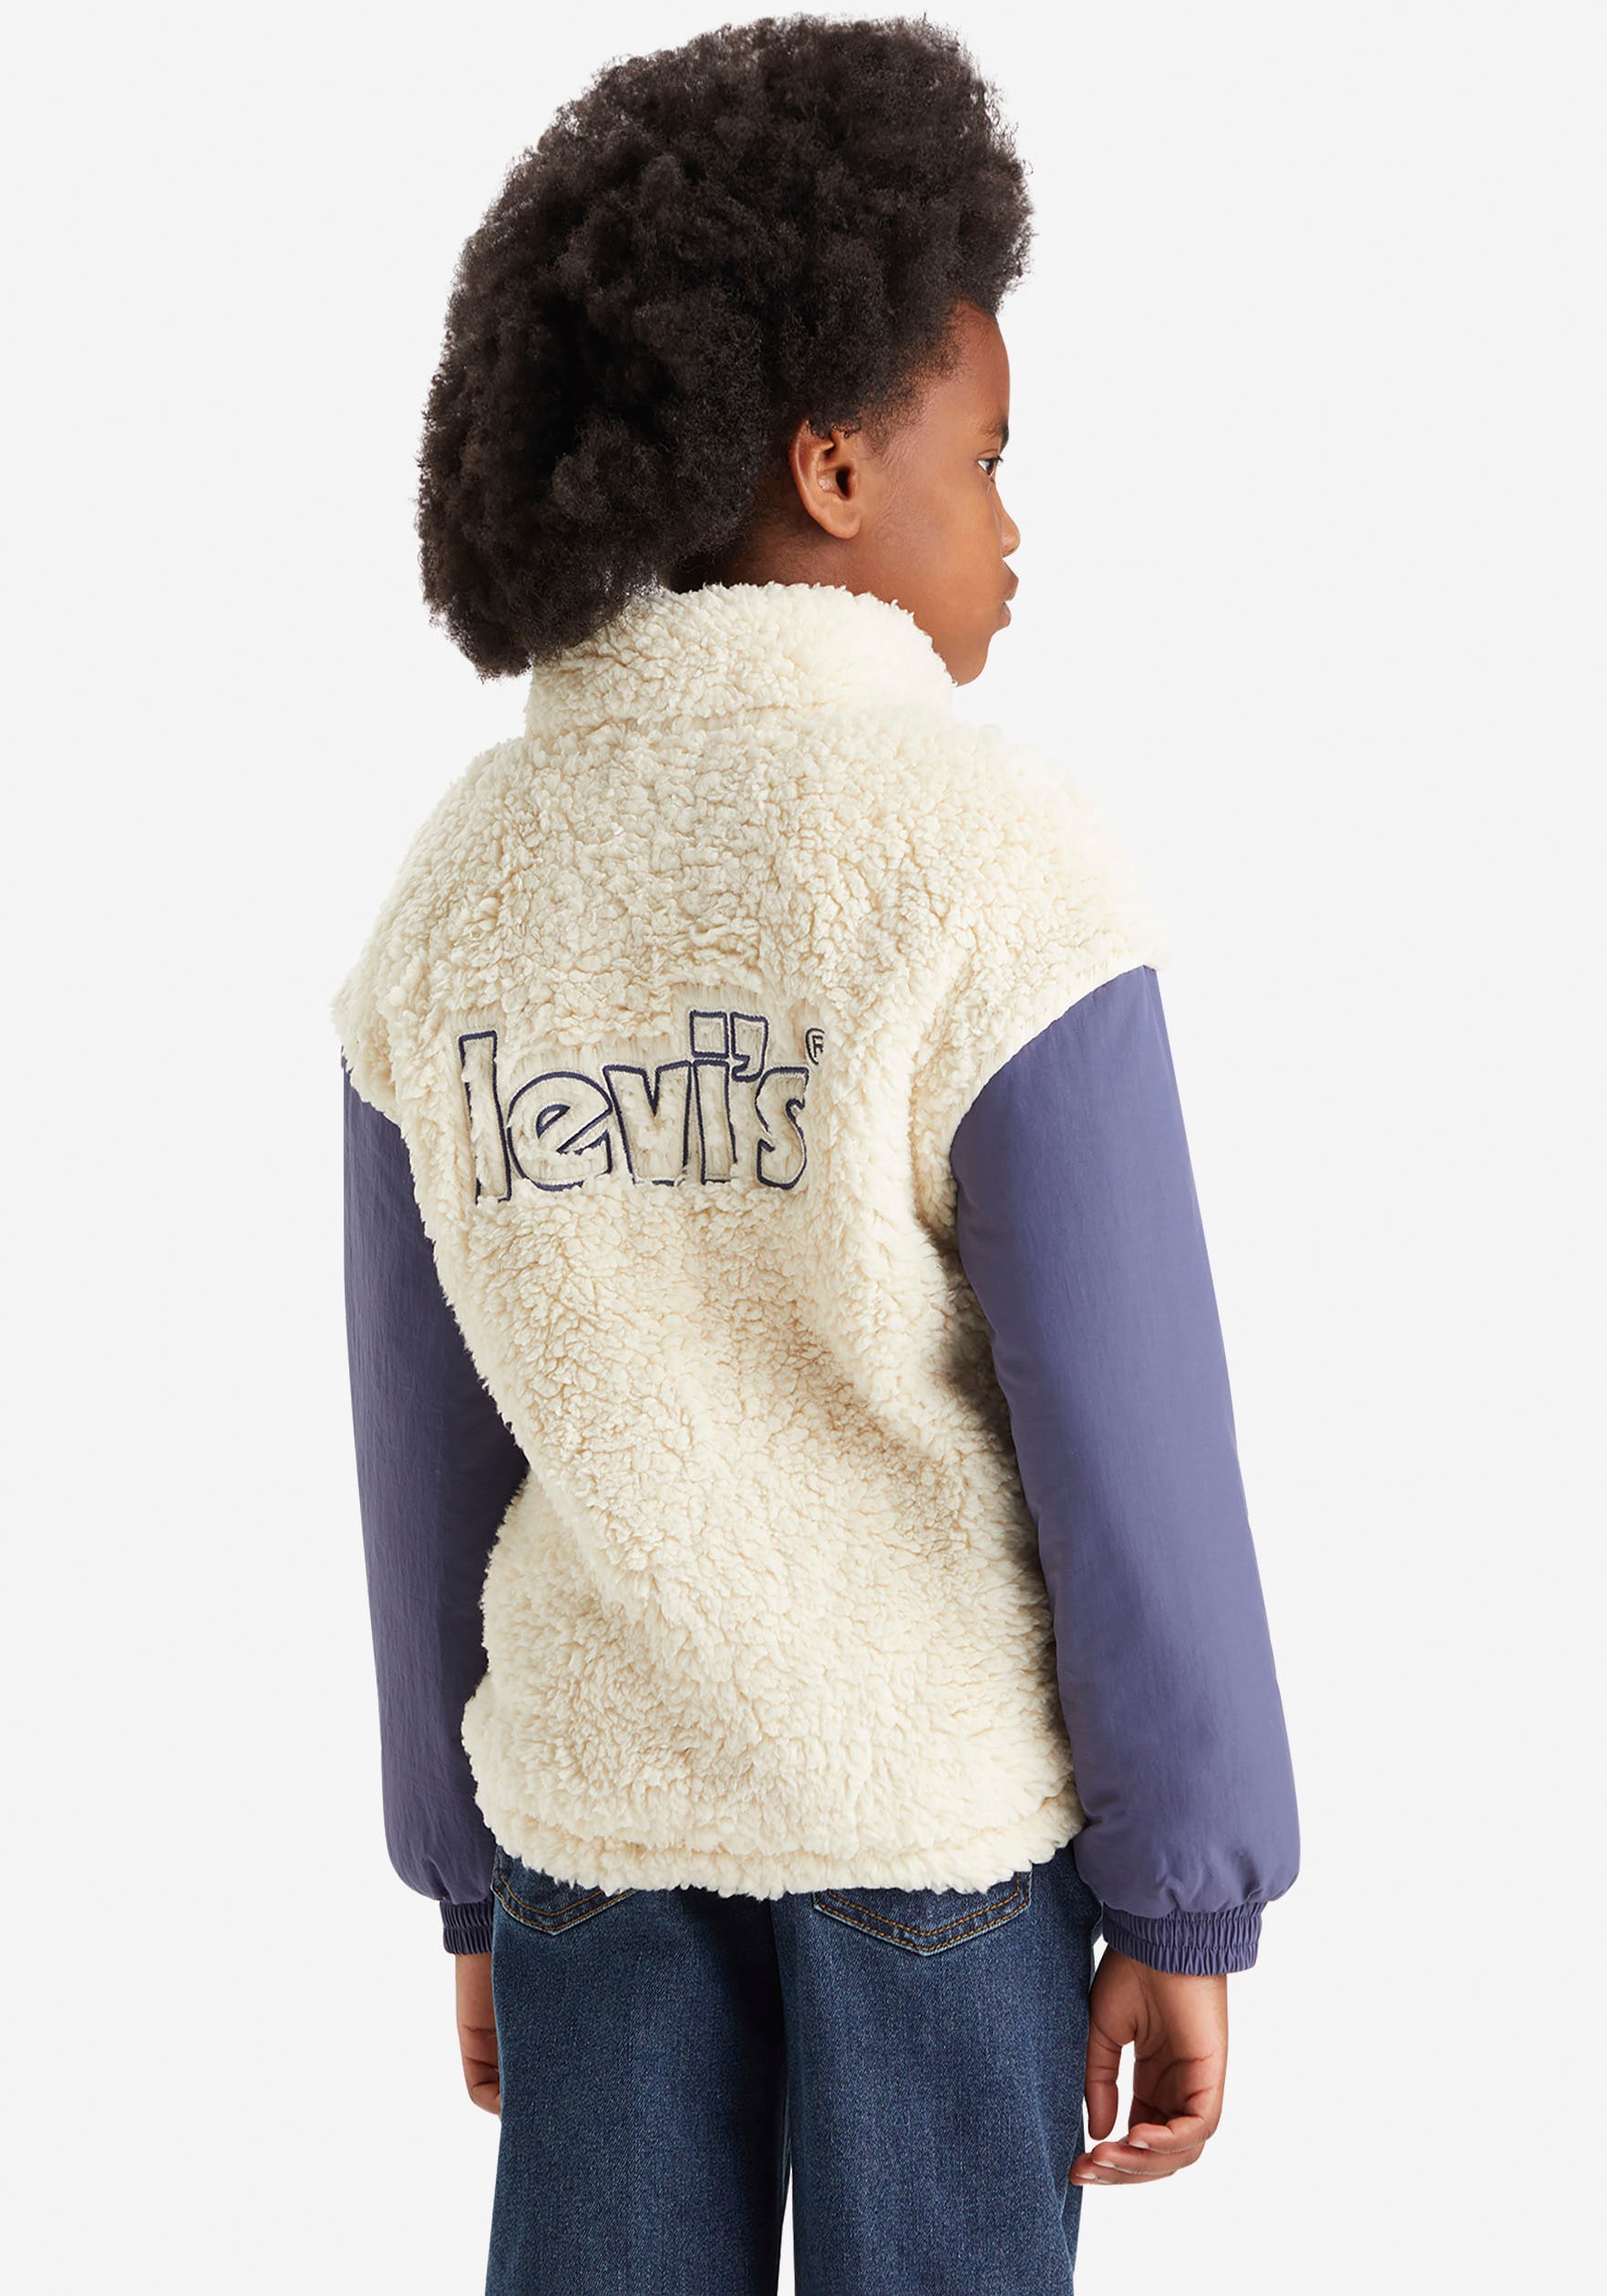 Levi's® Kids Fellimitatjacke, mit Markenschriftzug auf dem Rücken for GIRLS